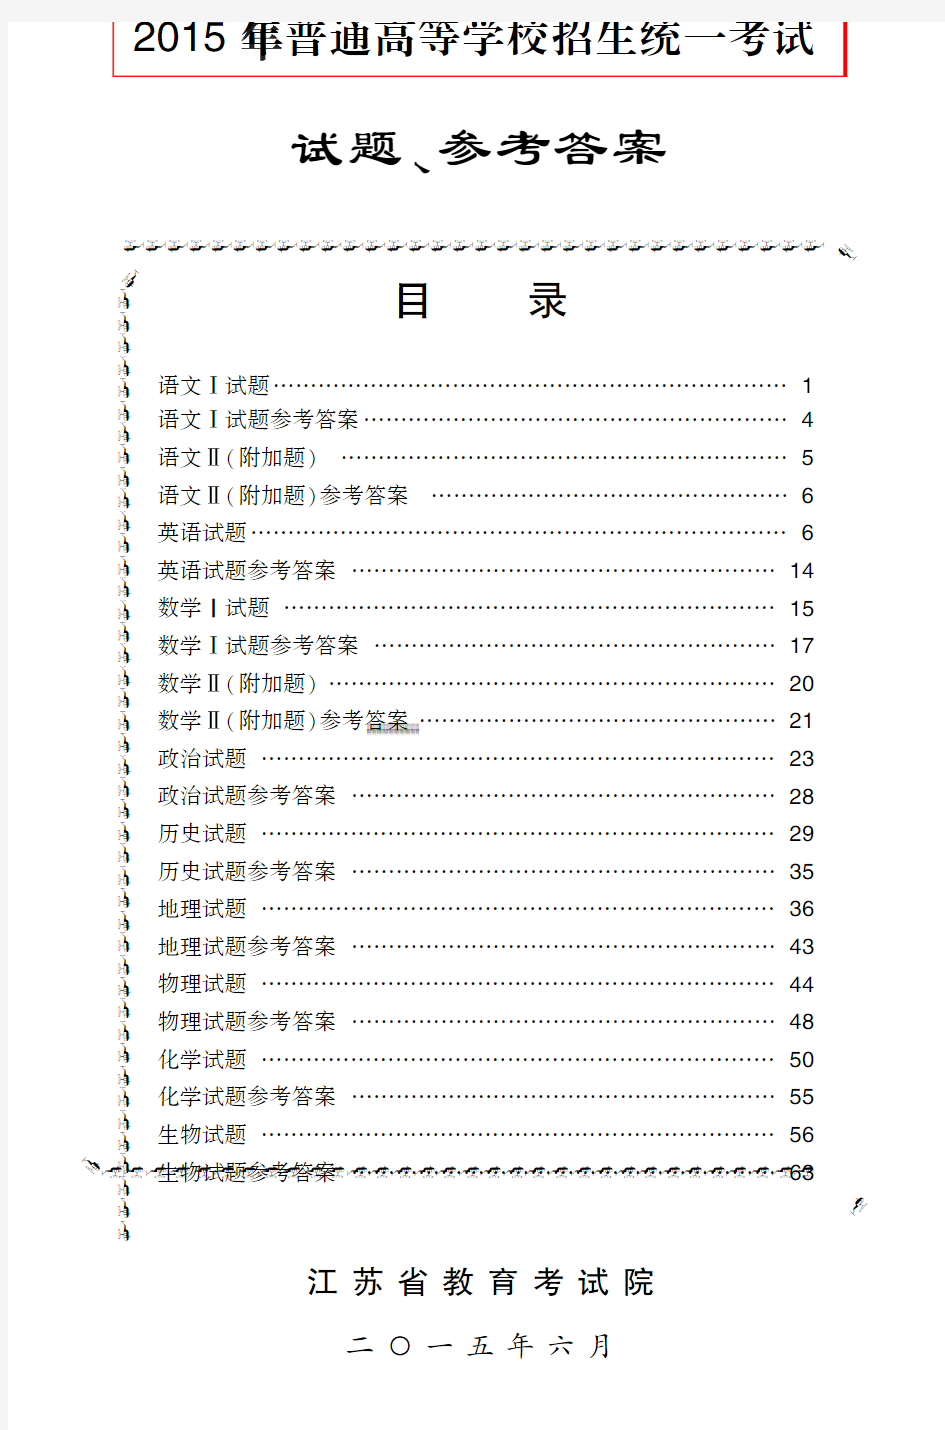 江苏省2015年高考各学科试题与答案汇总